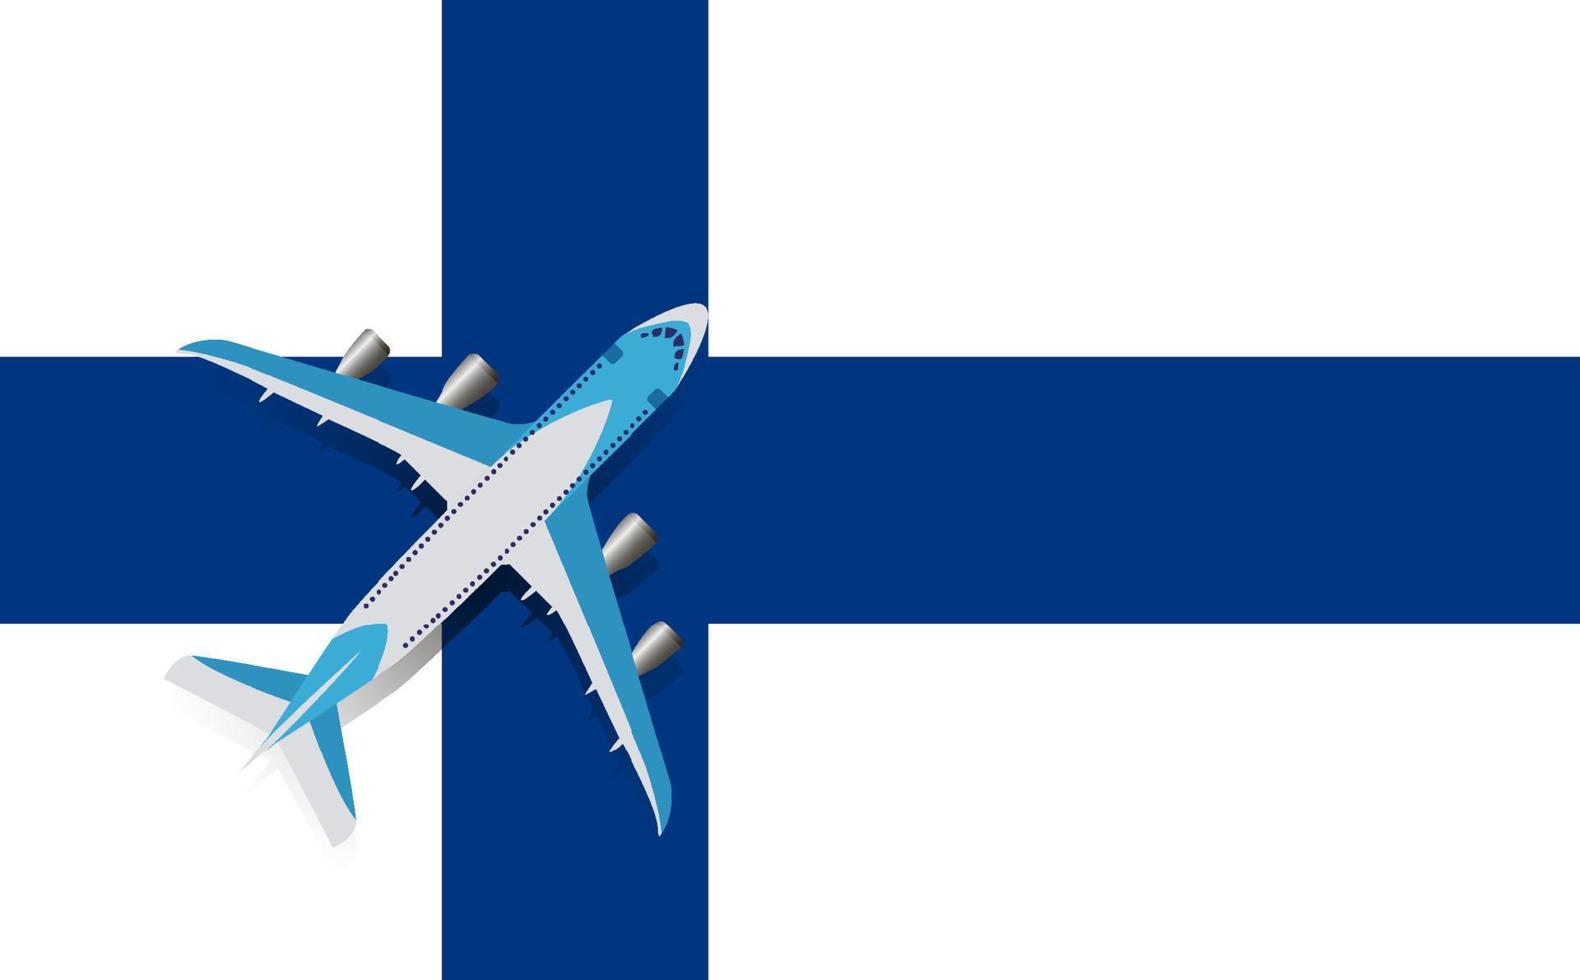 ilustración vectorial de un avión de pasajeros que sobrevuela la bandera de finlandia. concepto de turismo y viajes vector